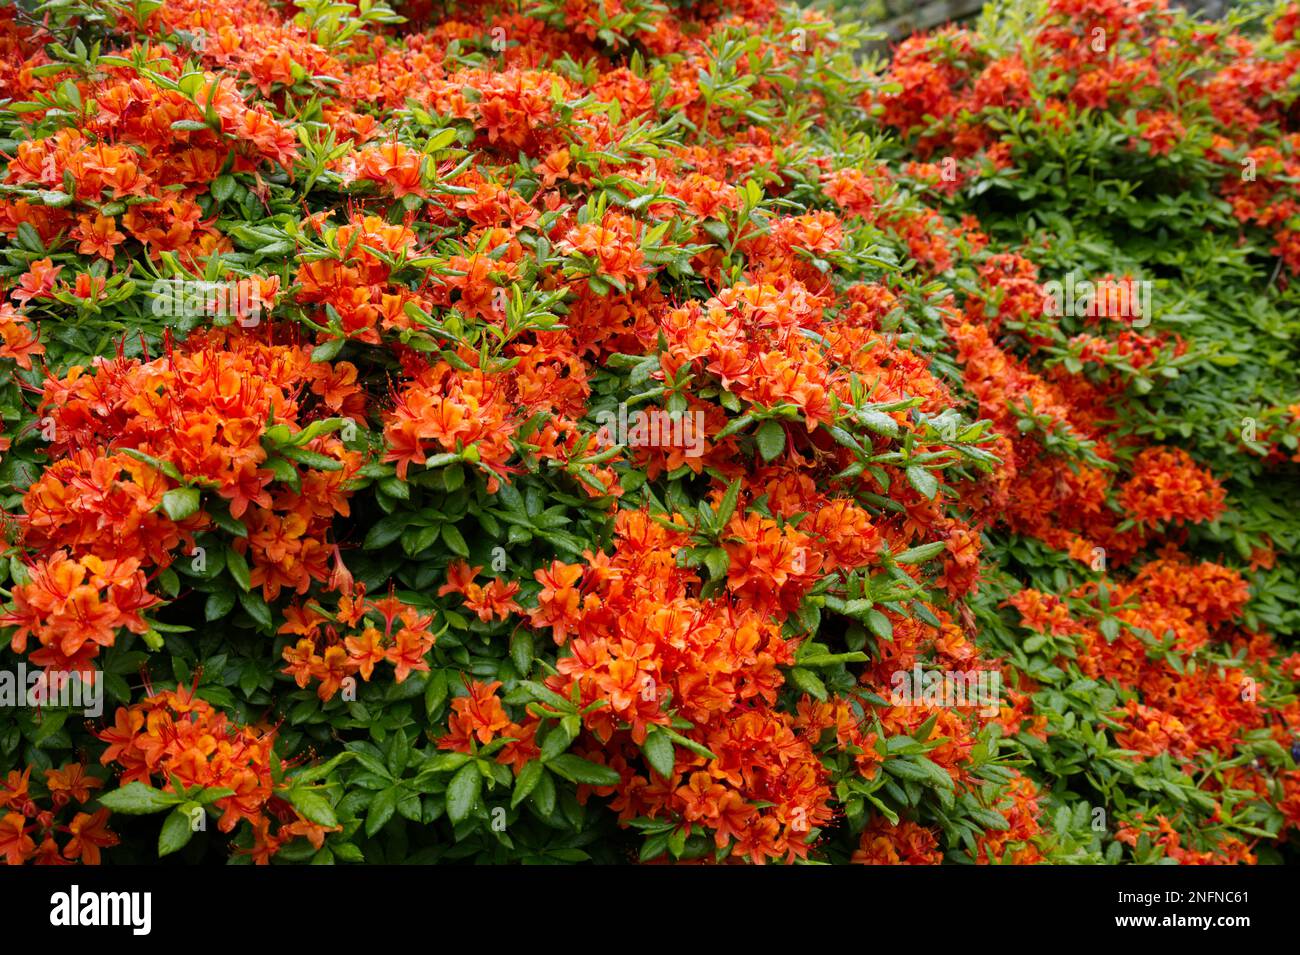 Incredibile esposizione di inizio estate dal contrasto di brillanti fiori di azalea rosso / arancione e verde brillante fogliame in un giardino irlandese maggio Foto Stock